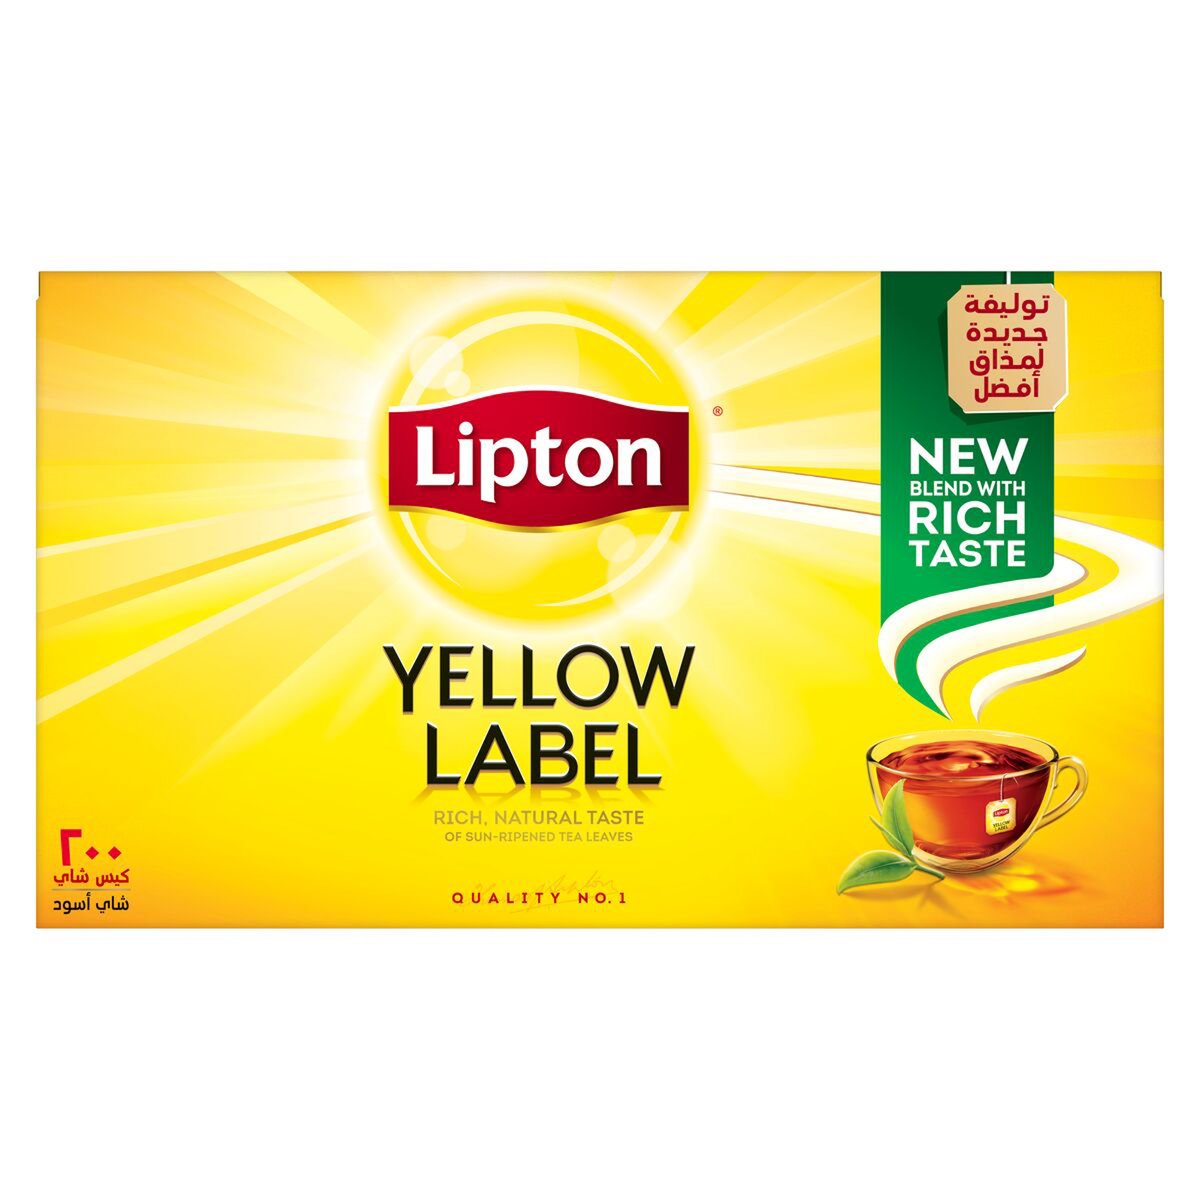 اشتري قم بشراء ليبتون شاي أسود بالعلامة الصفراء 200 كيس شاي Online at Best Price من الموقع - من لولو هايبر ماركت Tea Bag في الكويت